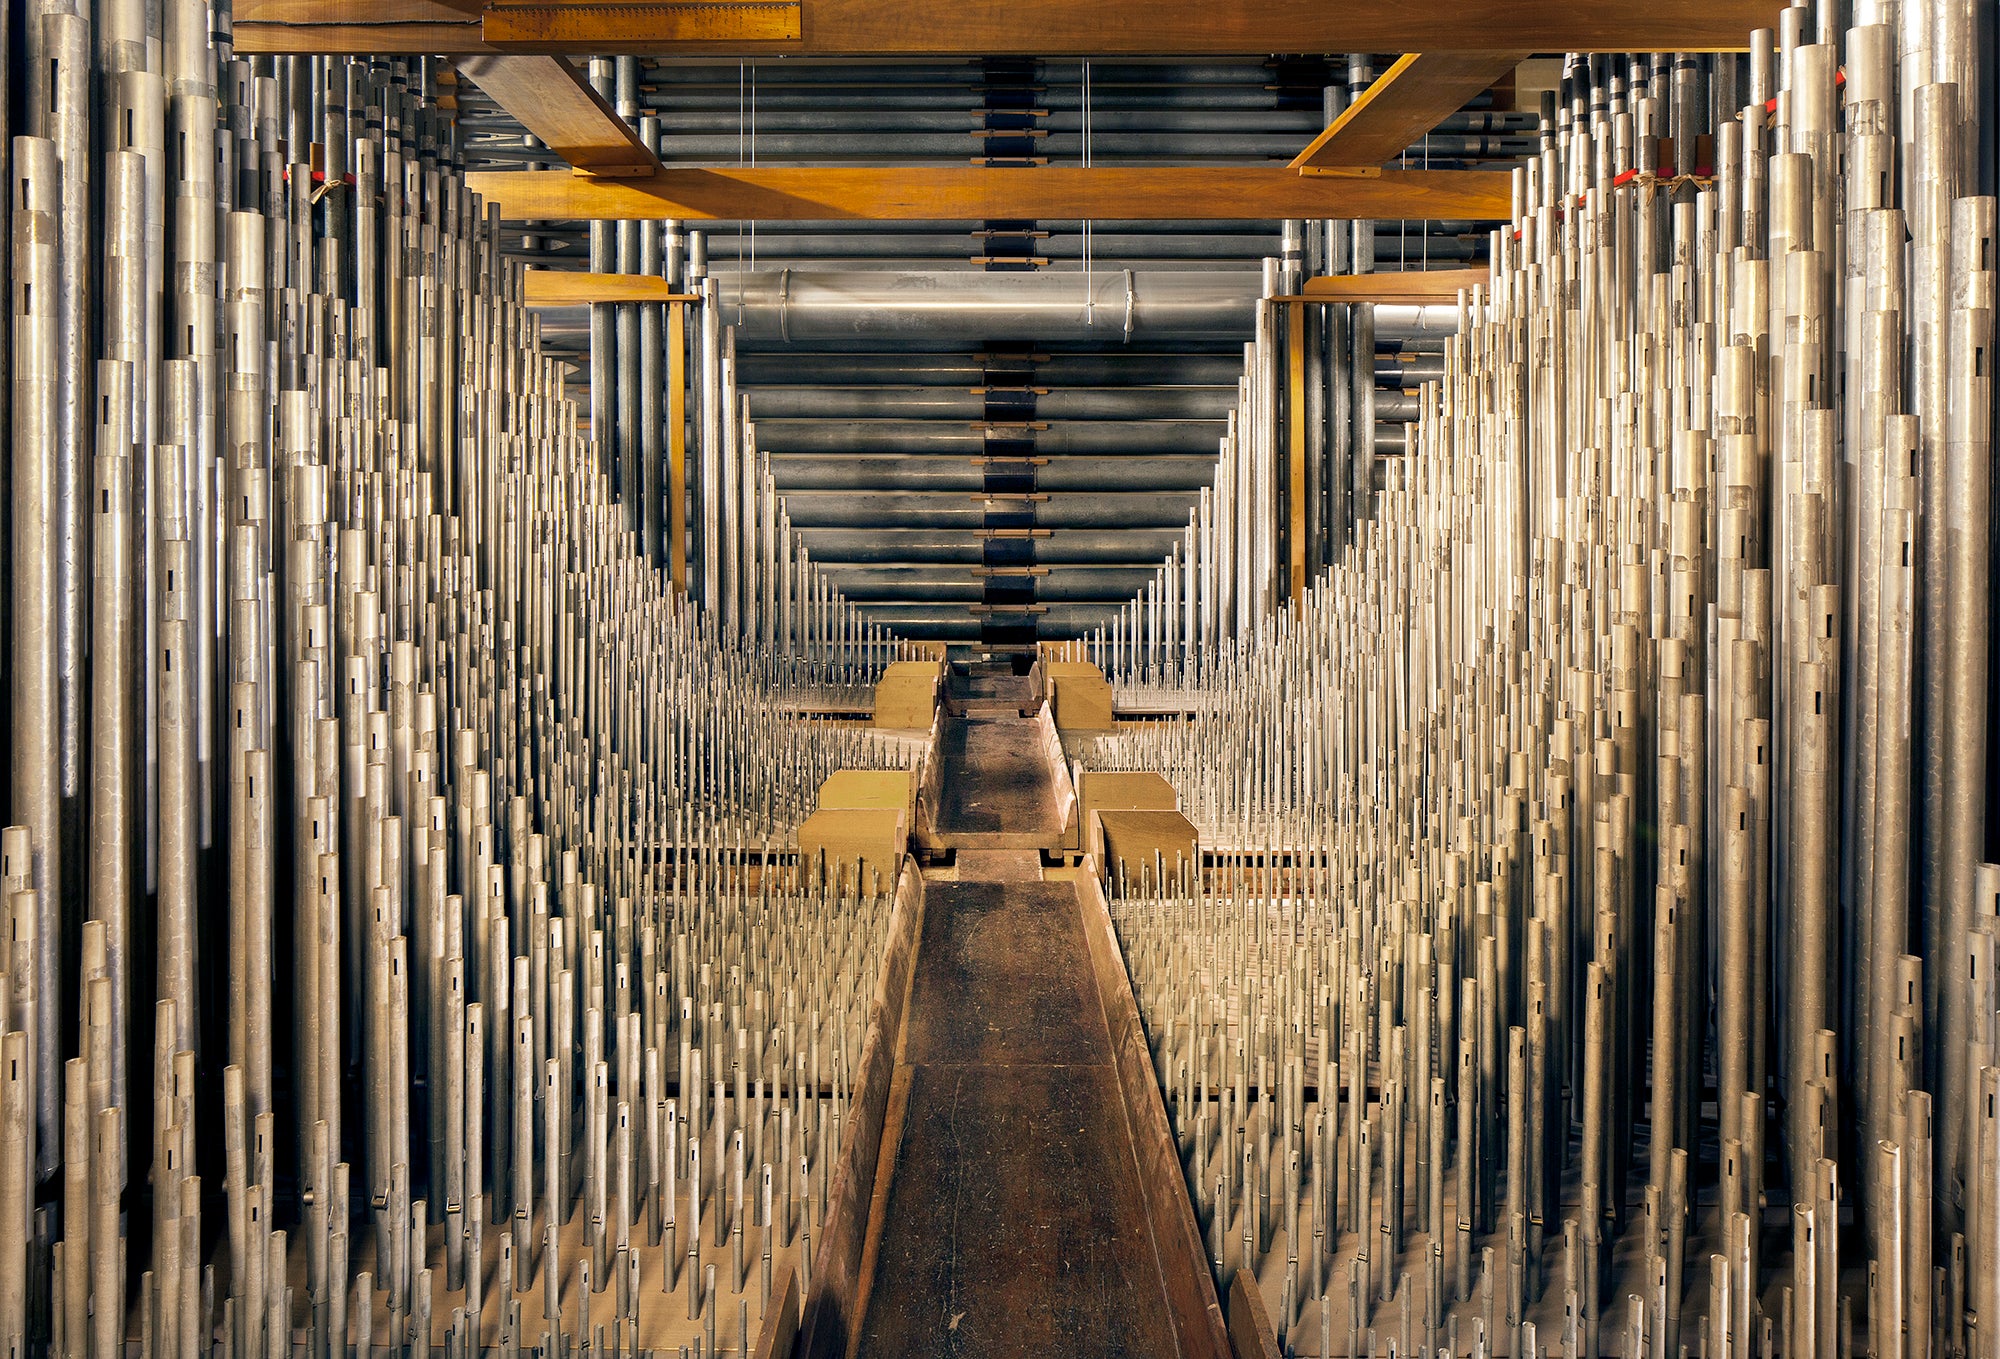 Wannamaker organ pipe chamber. (Joseph E.B. Elliott/Philadelphia: Finding the Hidden City)